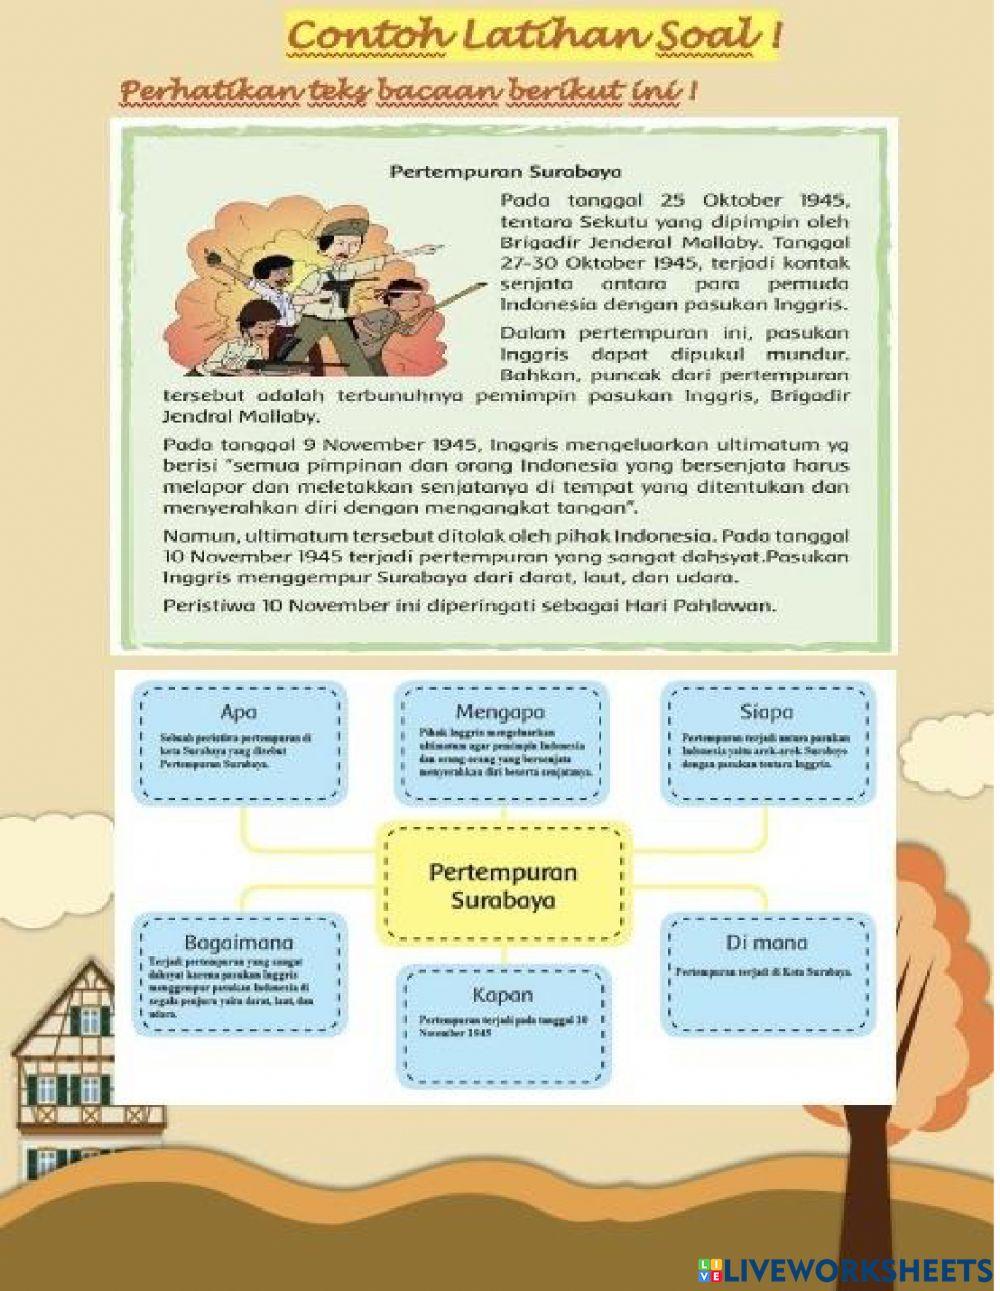 Menemukan Informasi Penting dari Teks Sejarah Pembelajaran Bahasa Indonesia Kelas 6 Semester 1 Tema 2 Subtema 1 Pembelajaran 1